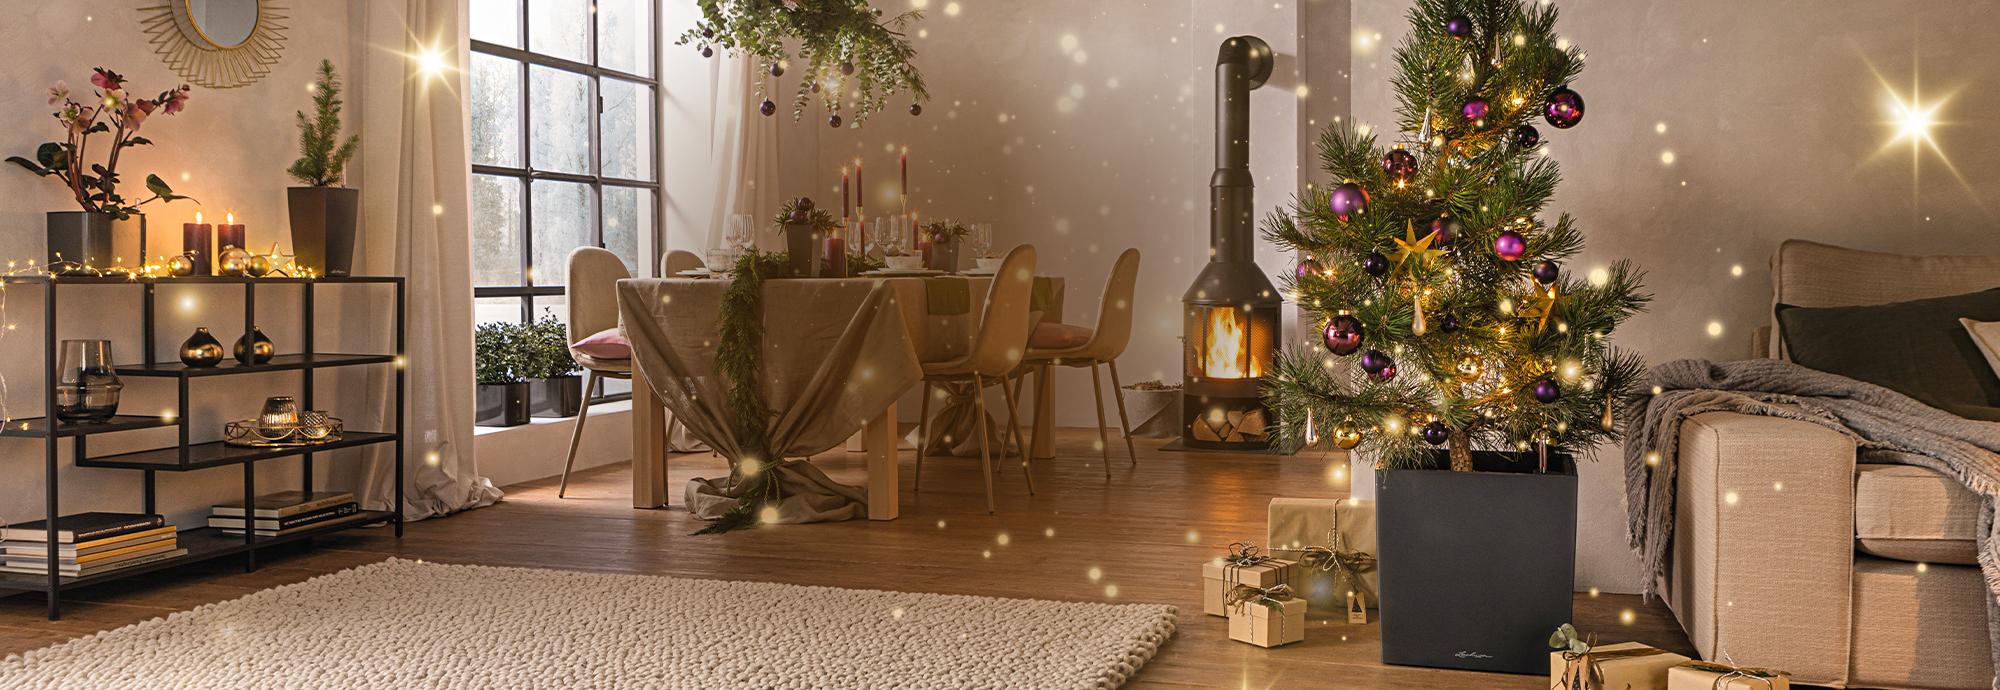 Verzaubern Sie Ihr Zuhause für ein ganz besonderes Weihnachtsfest